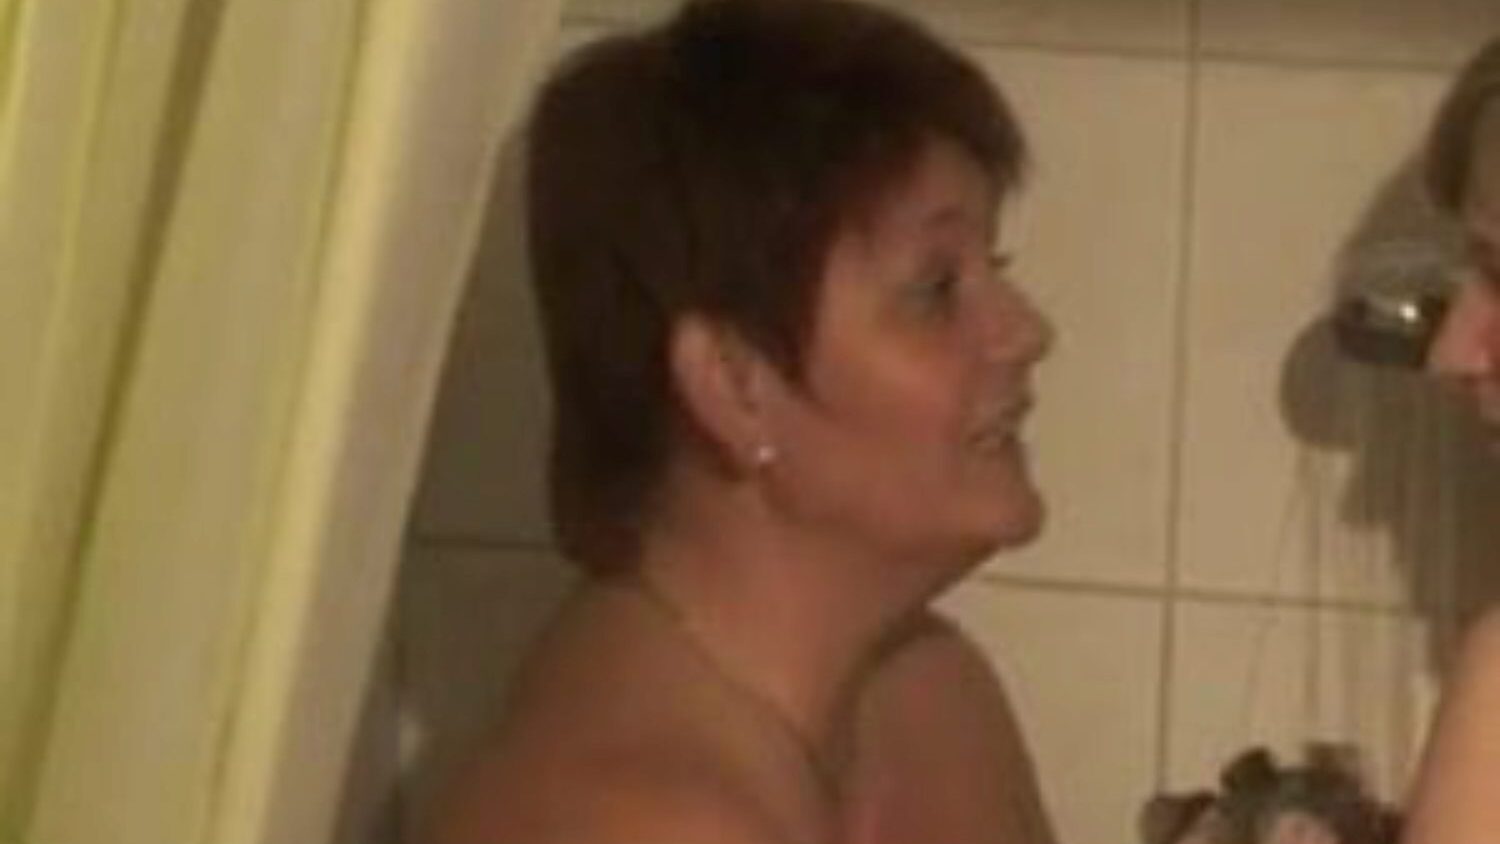 two bi-girls showering: free lesbian porn video 76 - xhamster mira 2 bi-girls showering tube escena de película de hacer el amor gratis para todos en xhamster, con la colección dominante de lesbianas alemanas, madre que me gustaría follar y pornografía bbw secuencias de peliculas